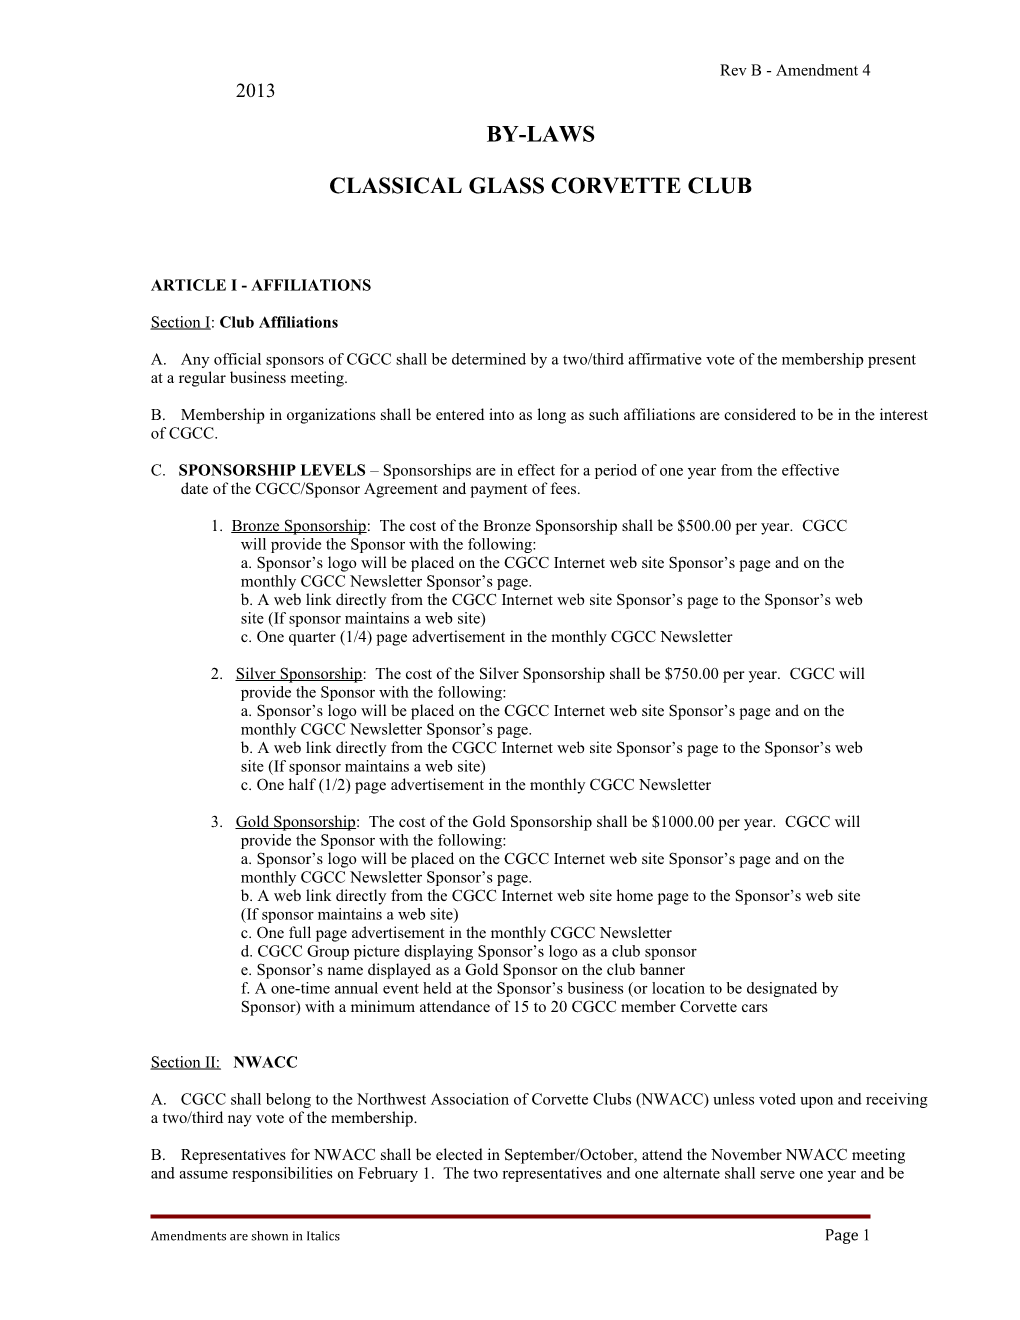 Classical Glass Corvette Club